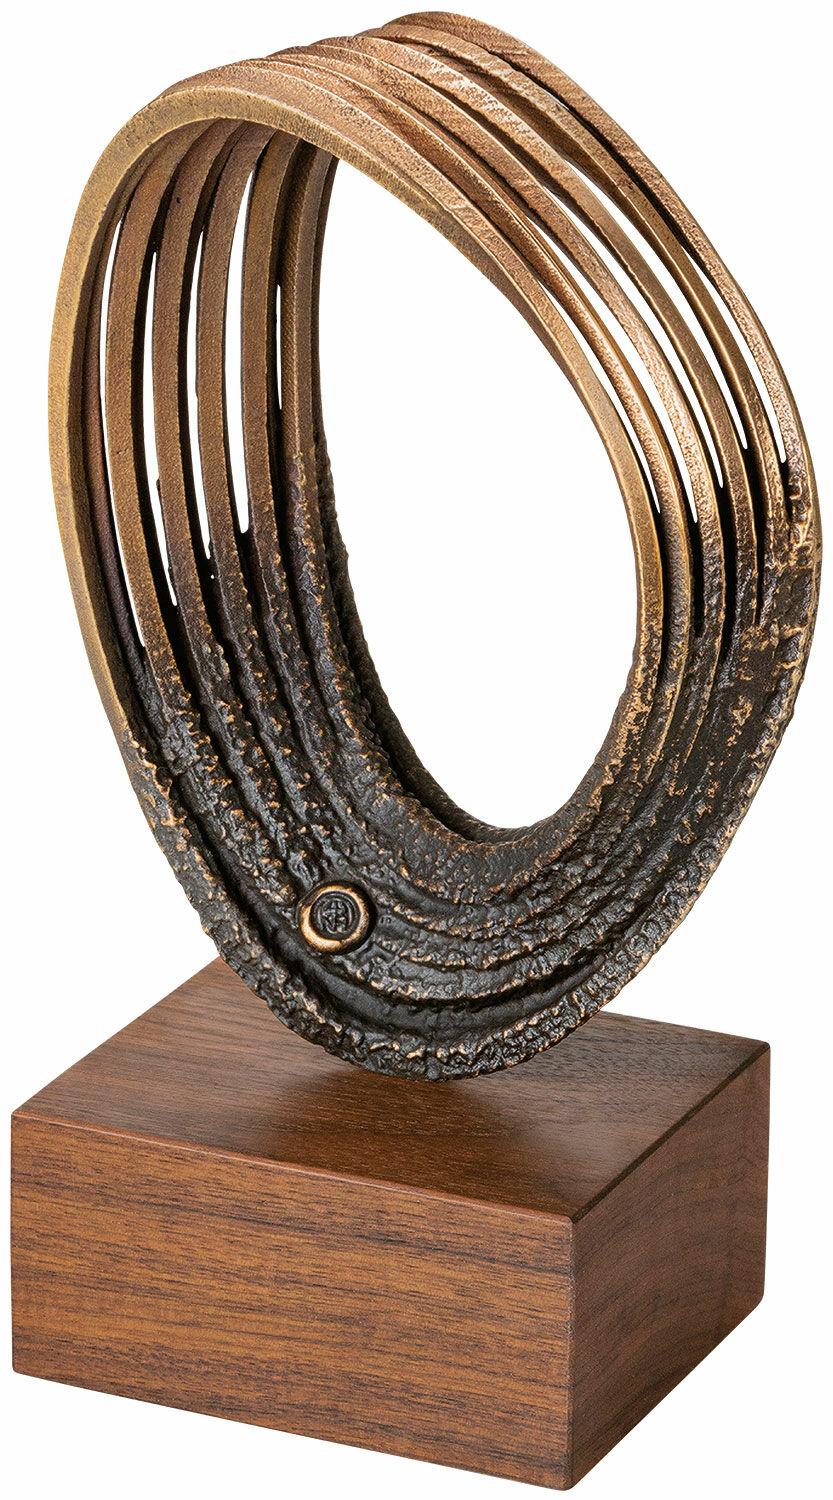 Sculpture "Infinity", bronze by Hans Nübold